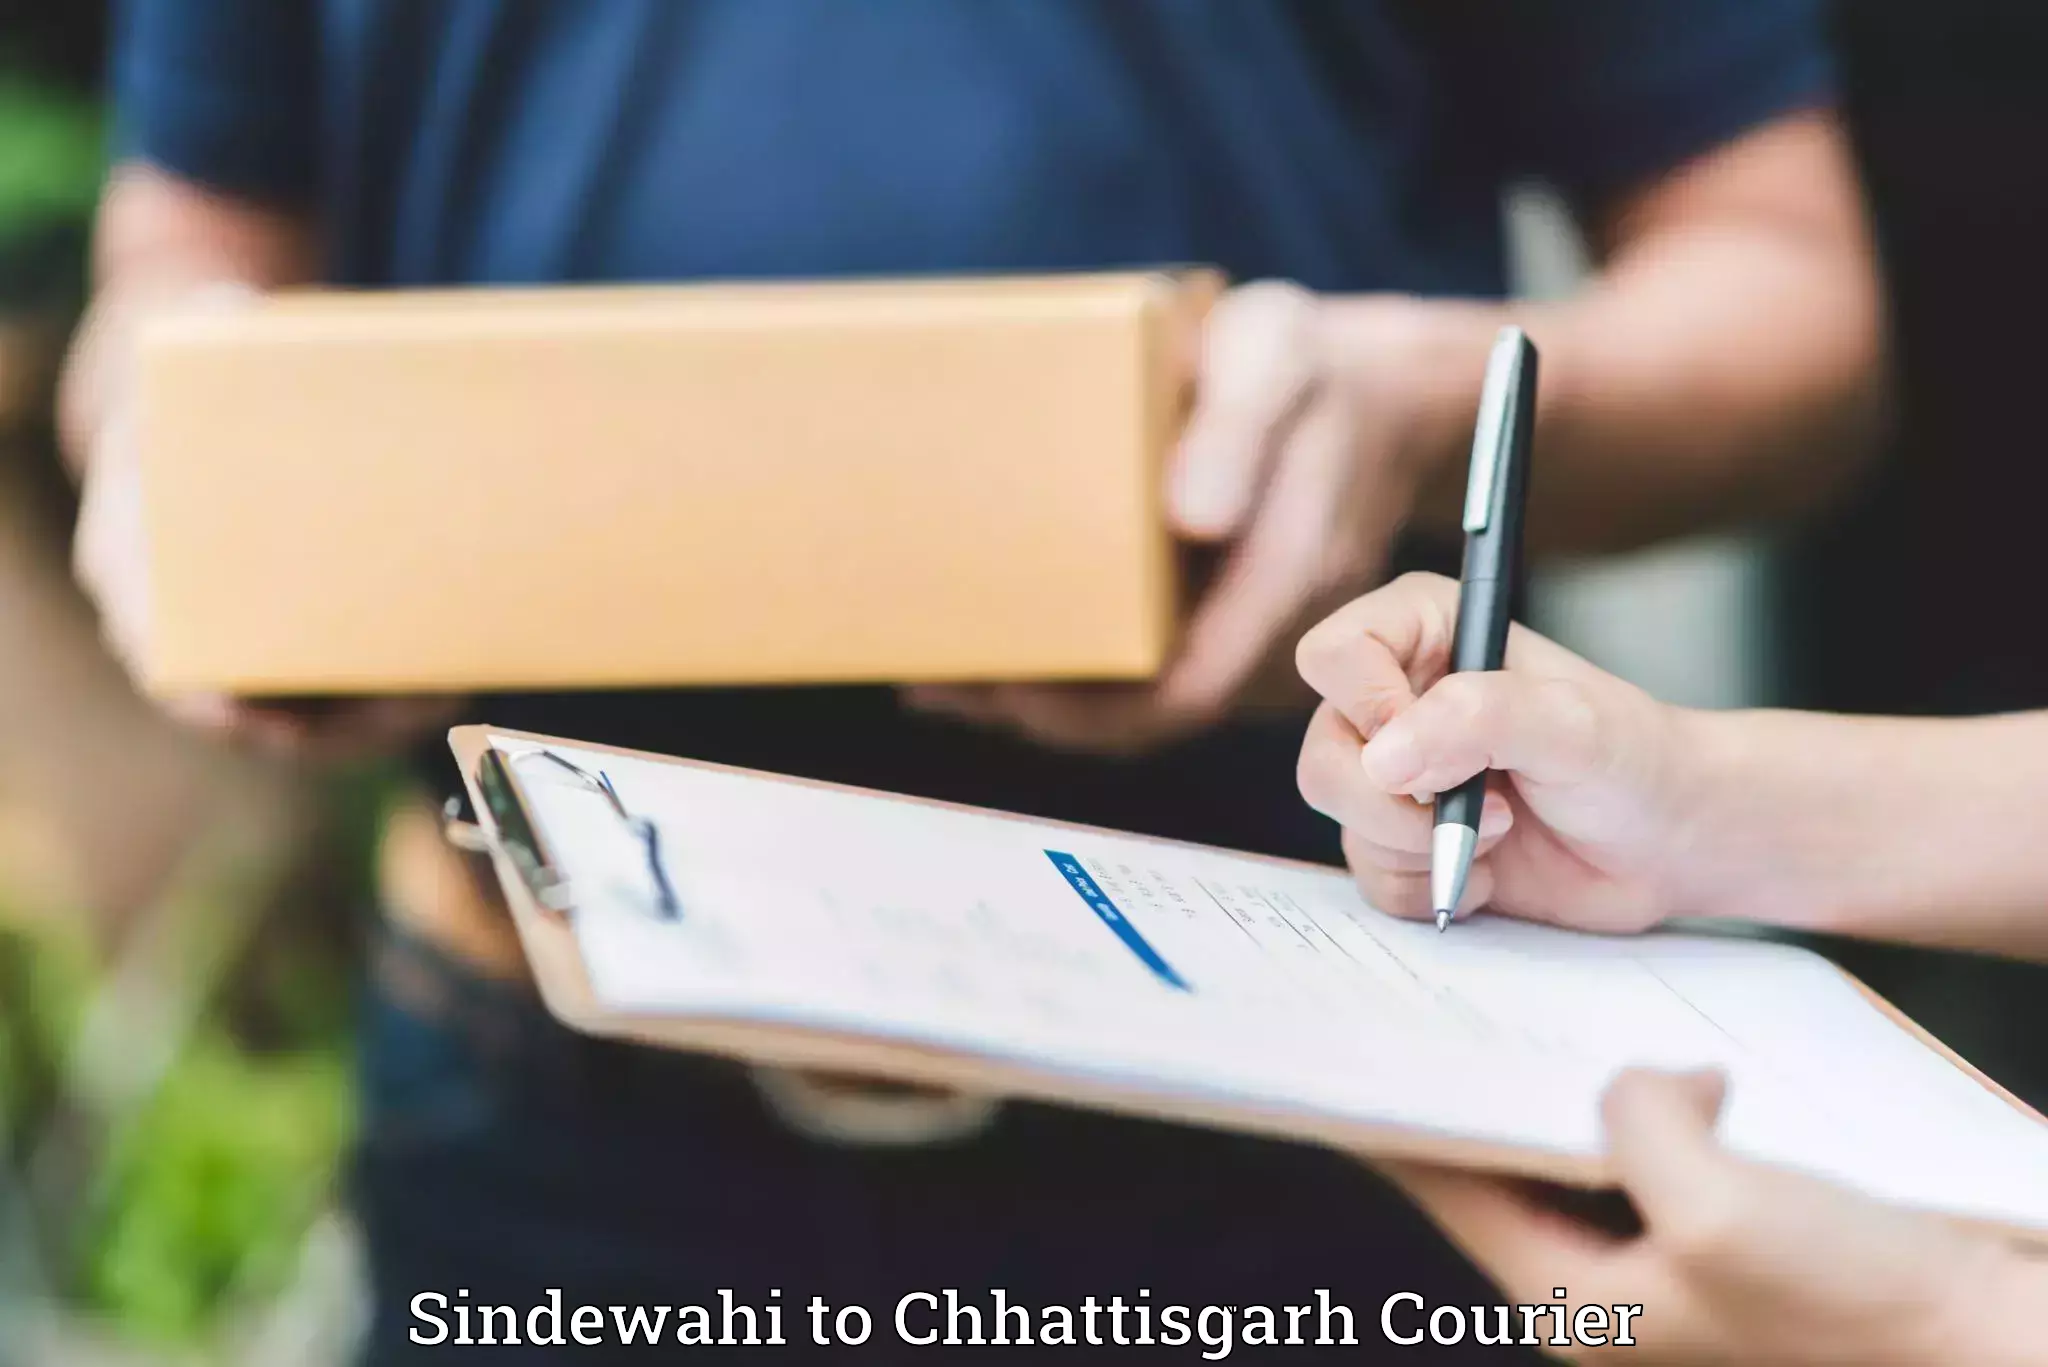 Baggage shipping experience Sindewahi to Patna Chhattisgarh